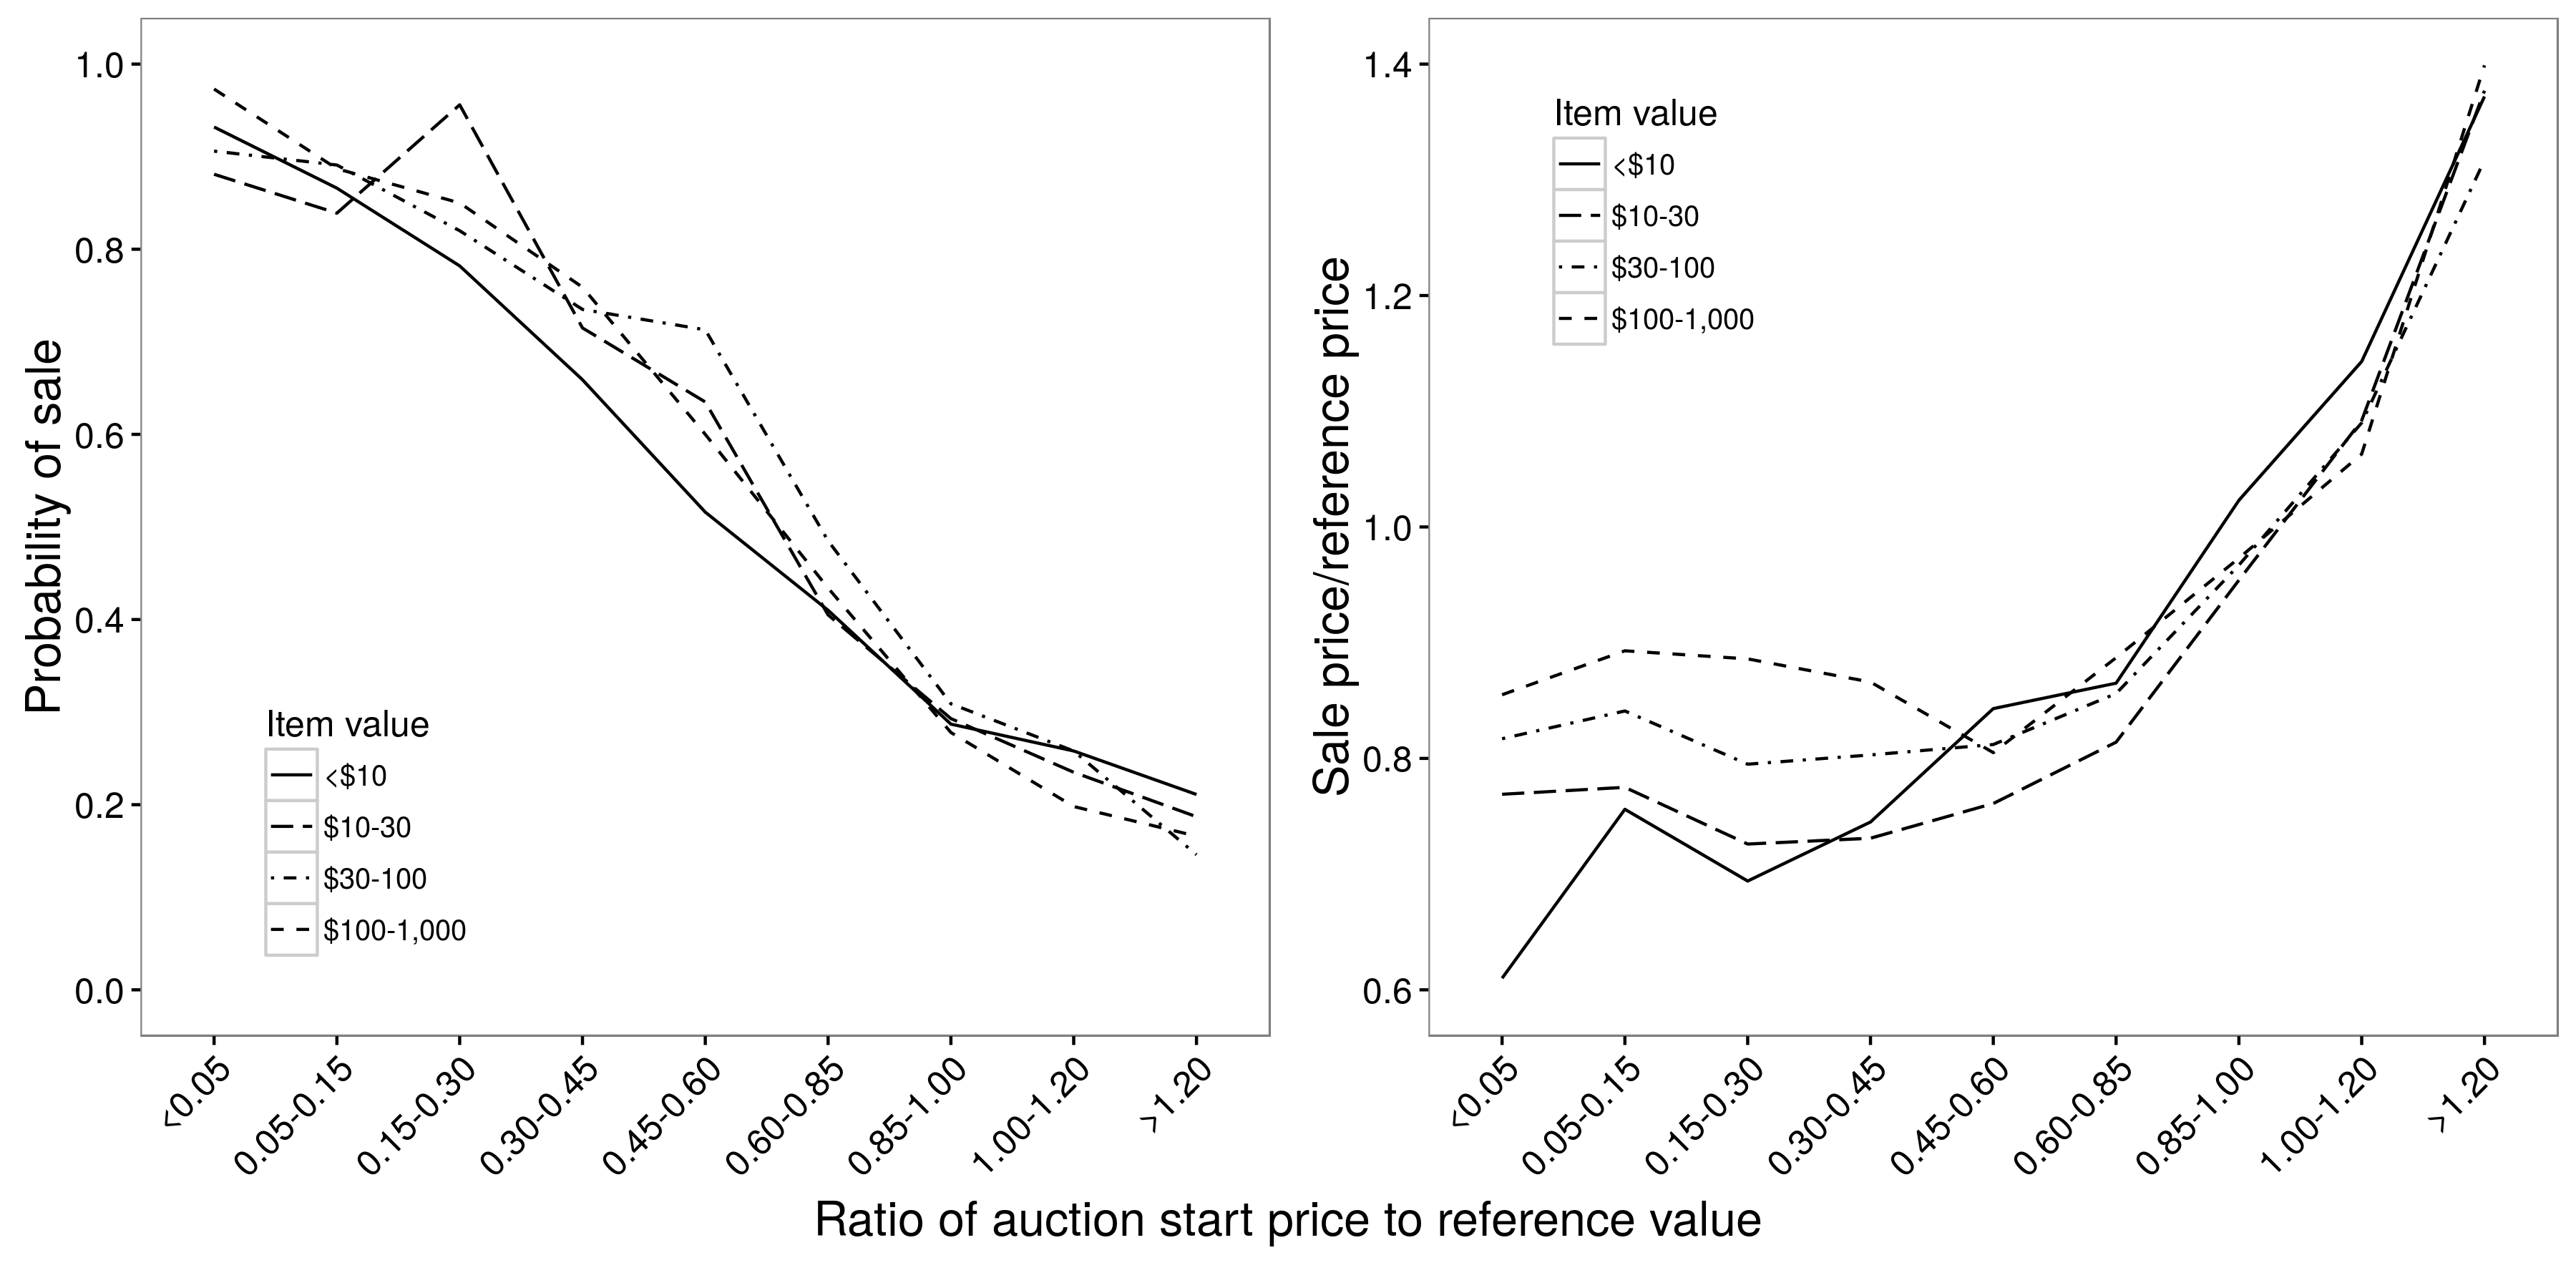 Hình 2.9: Mối quan hệ giữa giá khởi điểm đấu giá và xác suất bán hàng (a) và giá bán (b). Có một mối quan hệ tuyến tính giữa giá khởi điểm và xác suất bán hàng, nhưng mối quan hệ phi tuyến giữa giá khởi điểm và giá bán; với giá khởi điểm từ 0,05 đến 0,85, giá khởi điểm có rất ít tác động đến giá bán. Trong cả hai trường hợp, các mối quan hệ về cơ bản không phụ thuộc vào giá trị mục. Chuyển thể từ Einav et al. (2015), số liệu 4a và 4b.